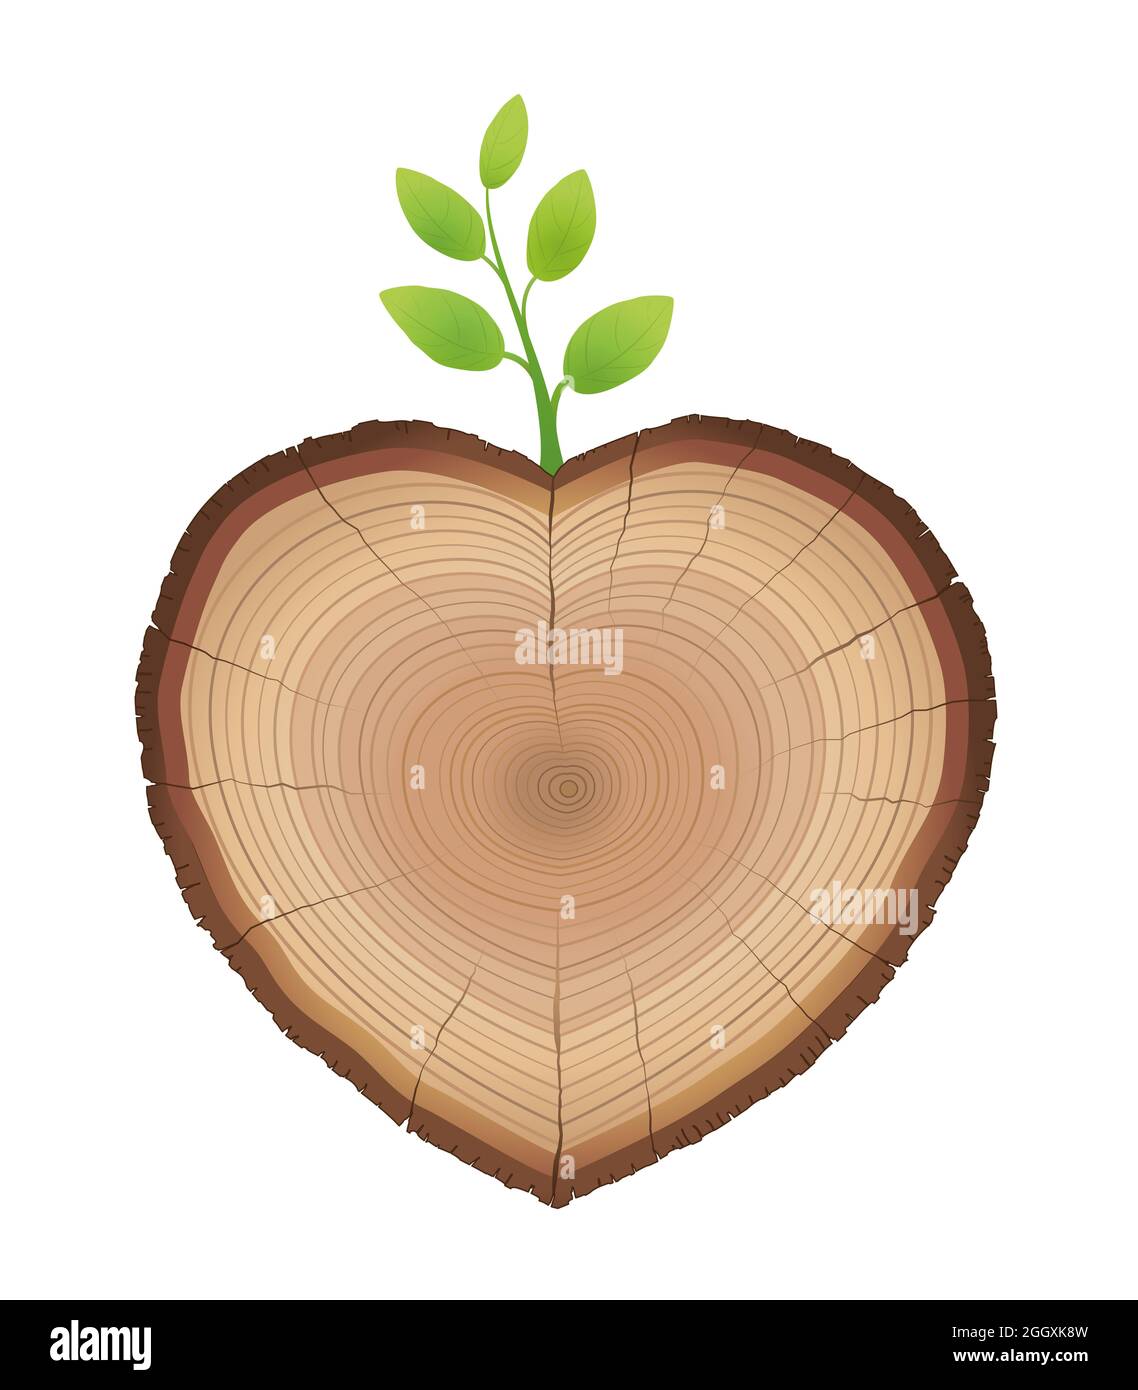 Tranche d'arbre, en forme de coeur, avec jeune germe qui en sort - tronc de bois avec fessée verte - symbole pour aimer la nature et la croissance. Banque D'Images